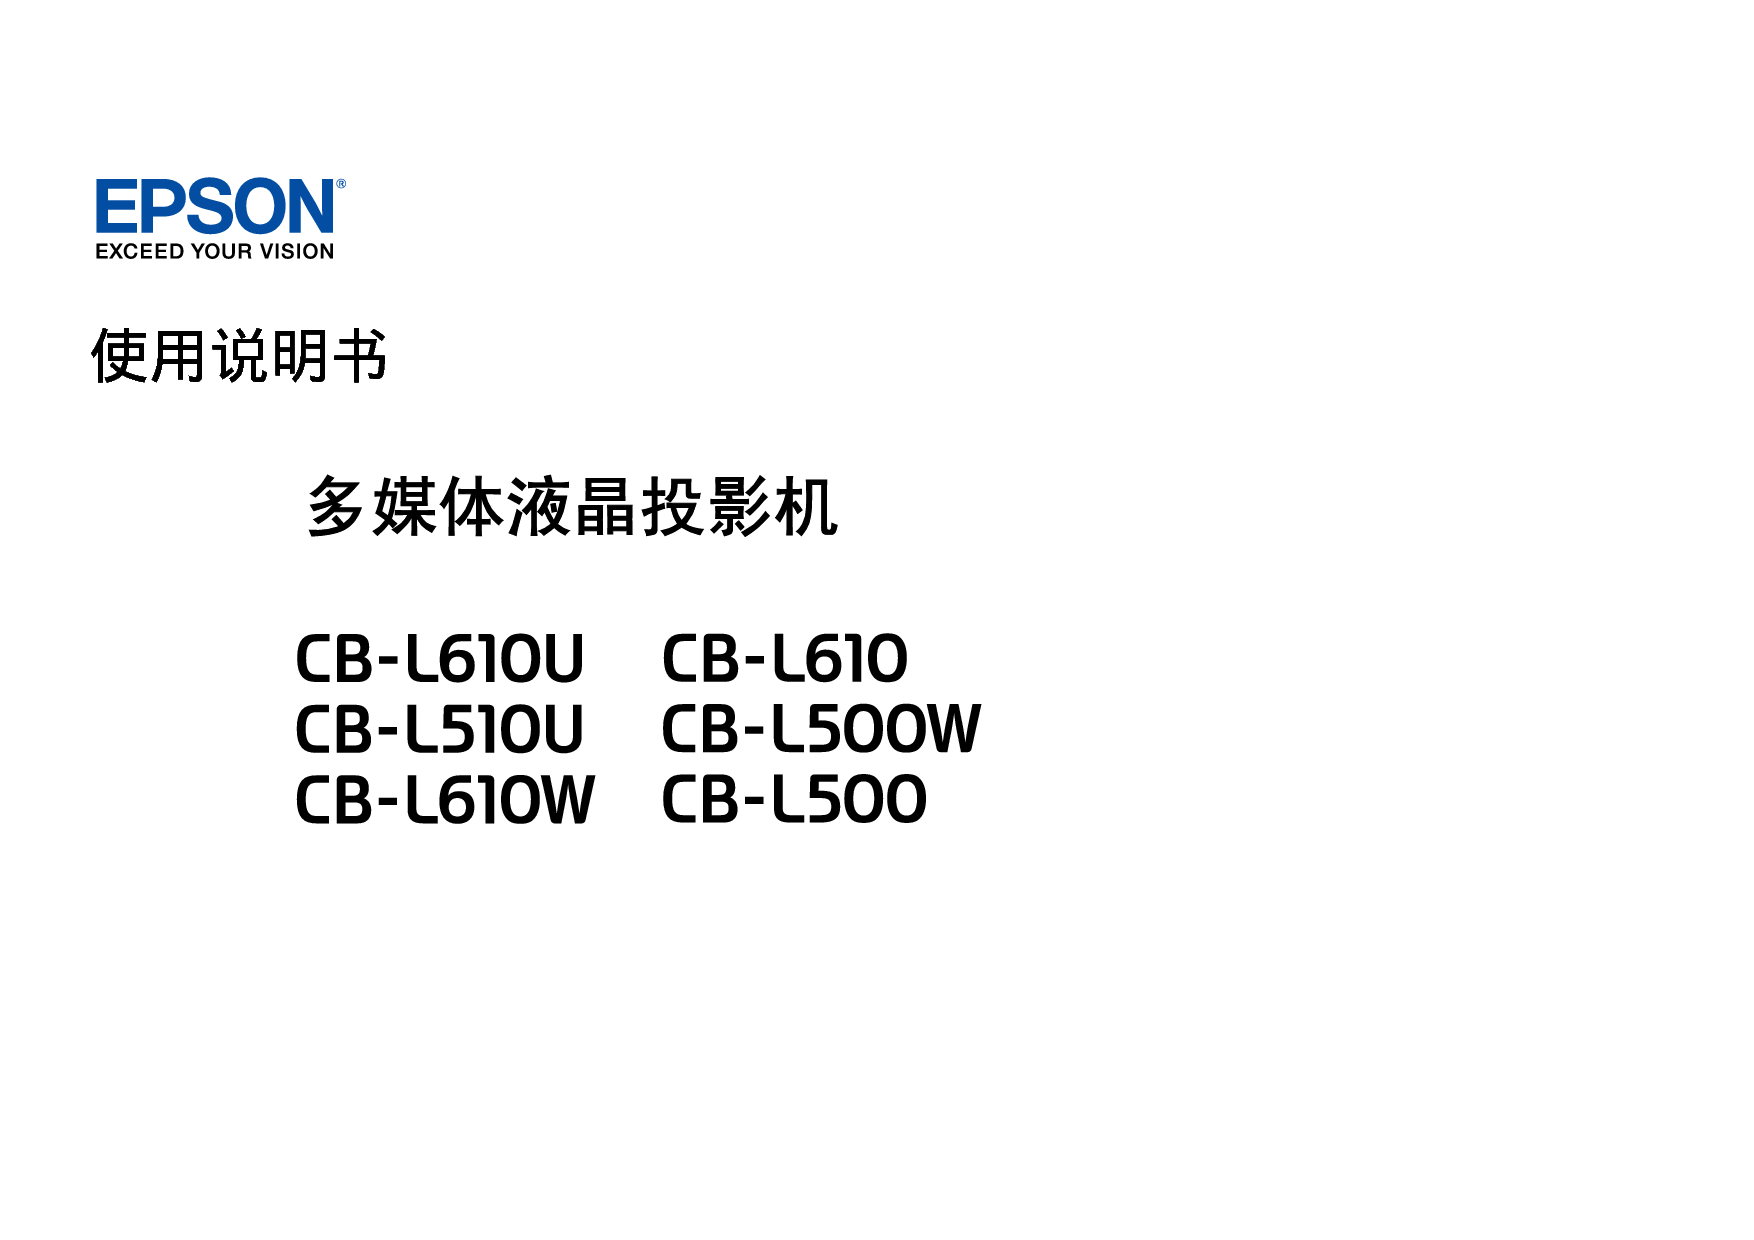 爱普生 Epson CB-L500W, CB-L610U 使用说明书 封面